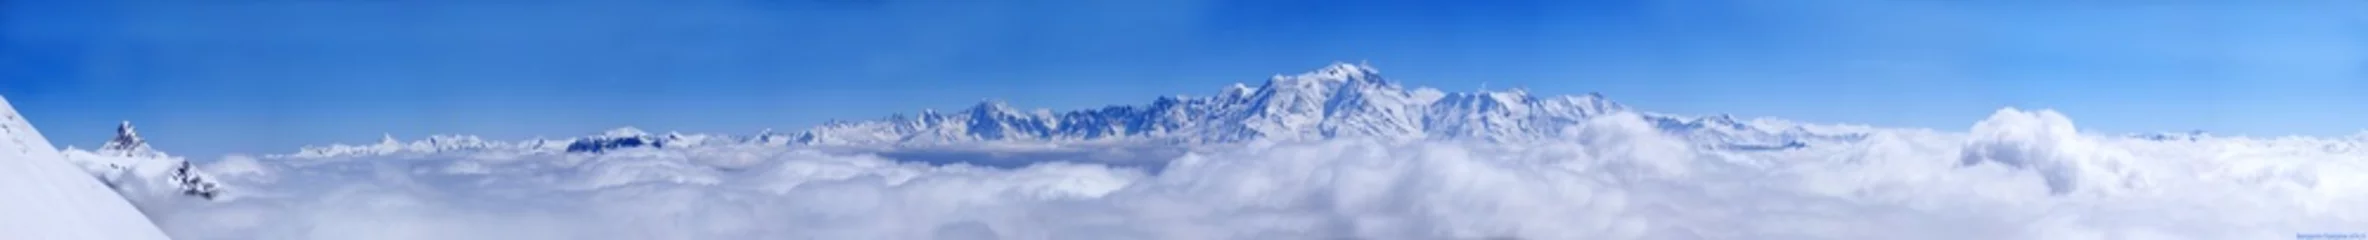 Fototapete Mont Blanc mont blanc landscape